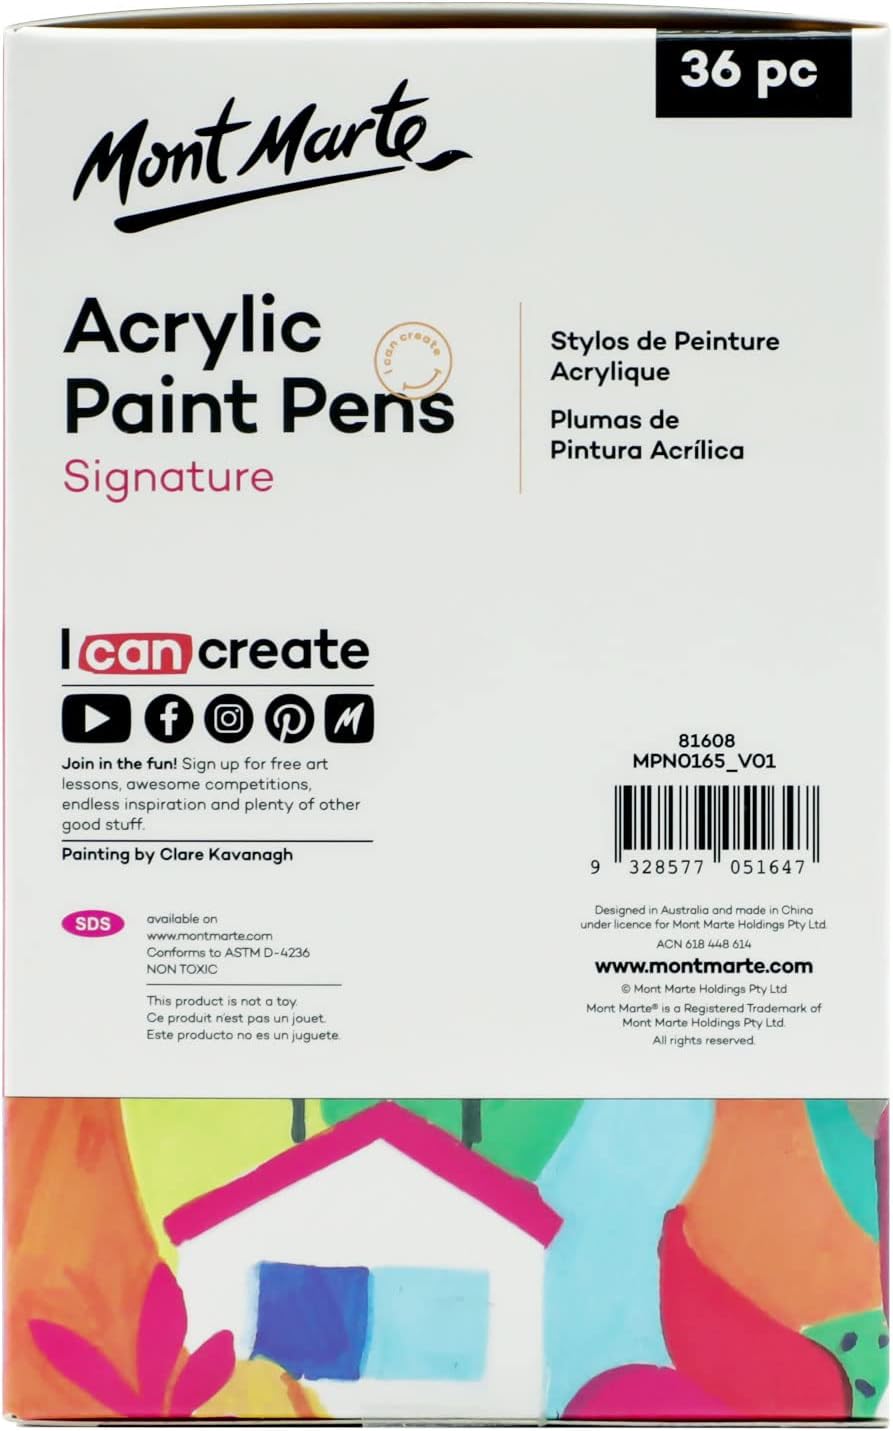 Mont Marte Signature Acrylic Paint Pens,36 Piece,Round Tip (3mm)